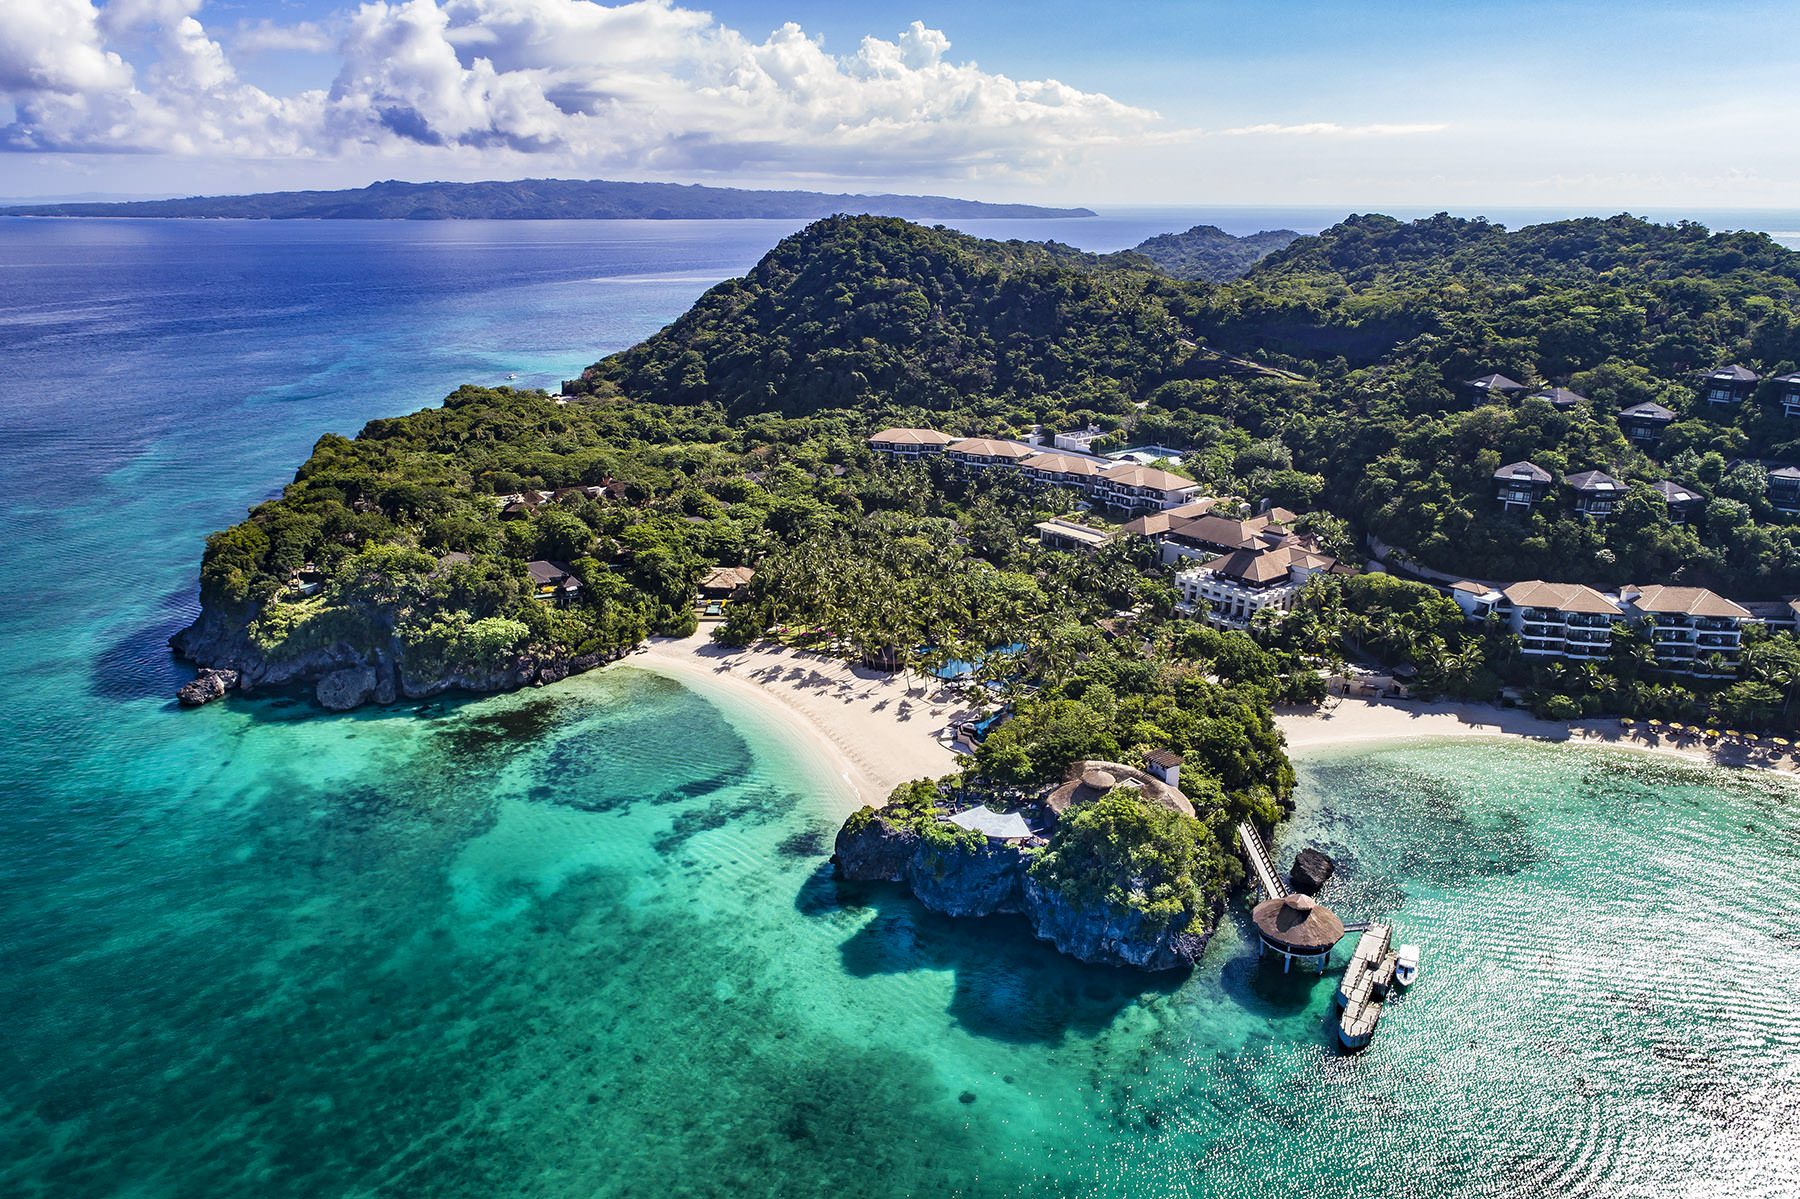 長灘島 。 香格里拉Shangri-La's Boracay Resort & Spa